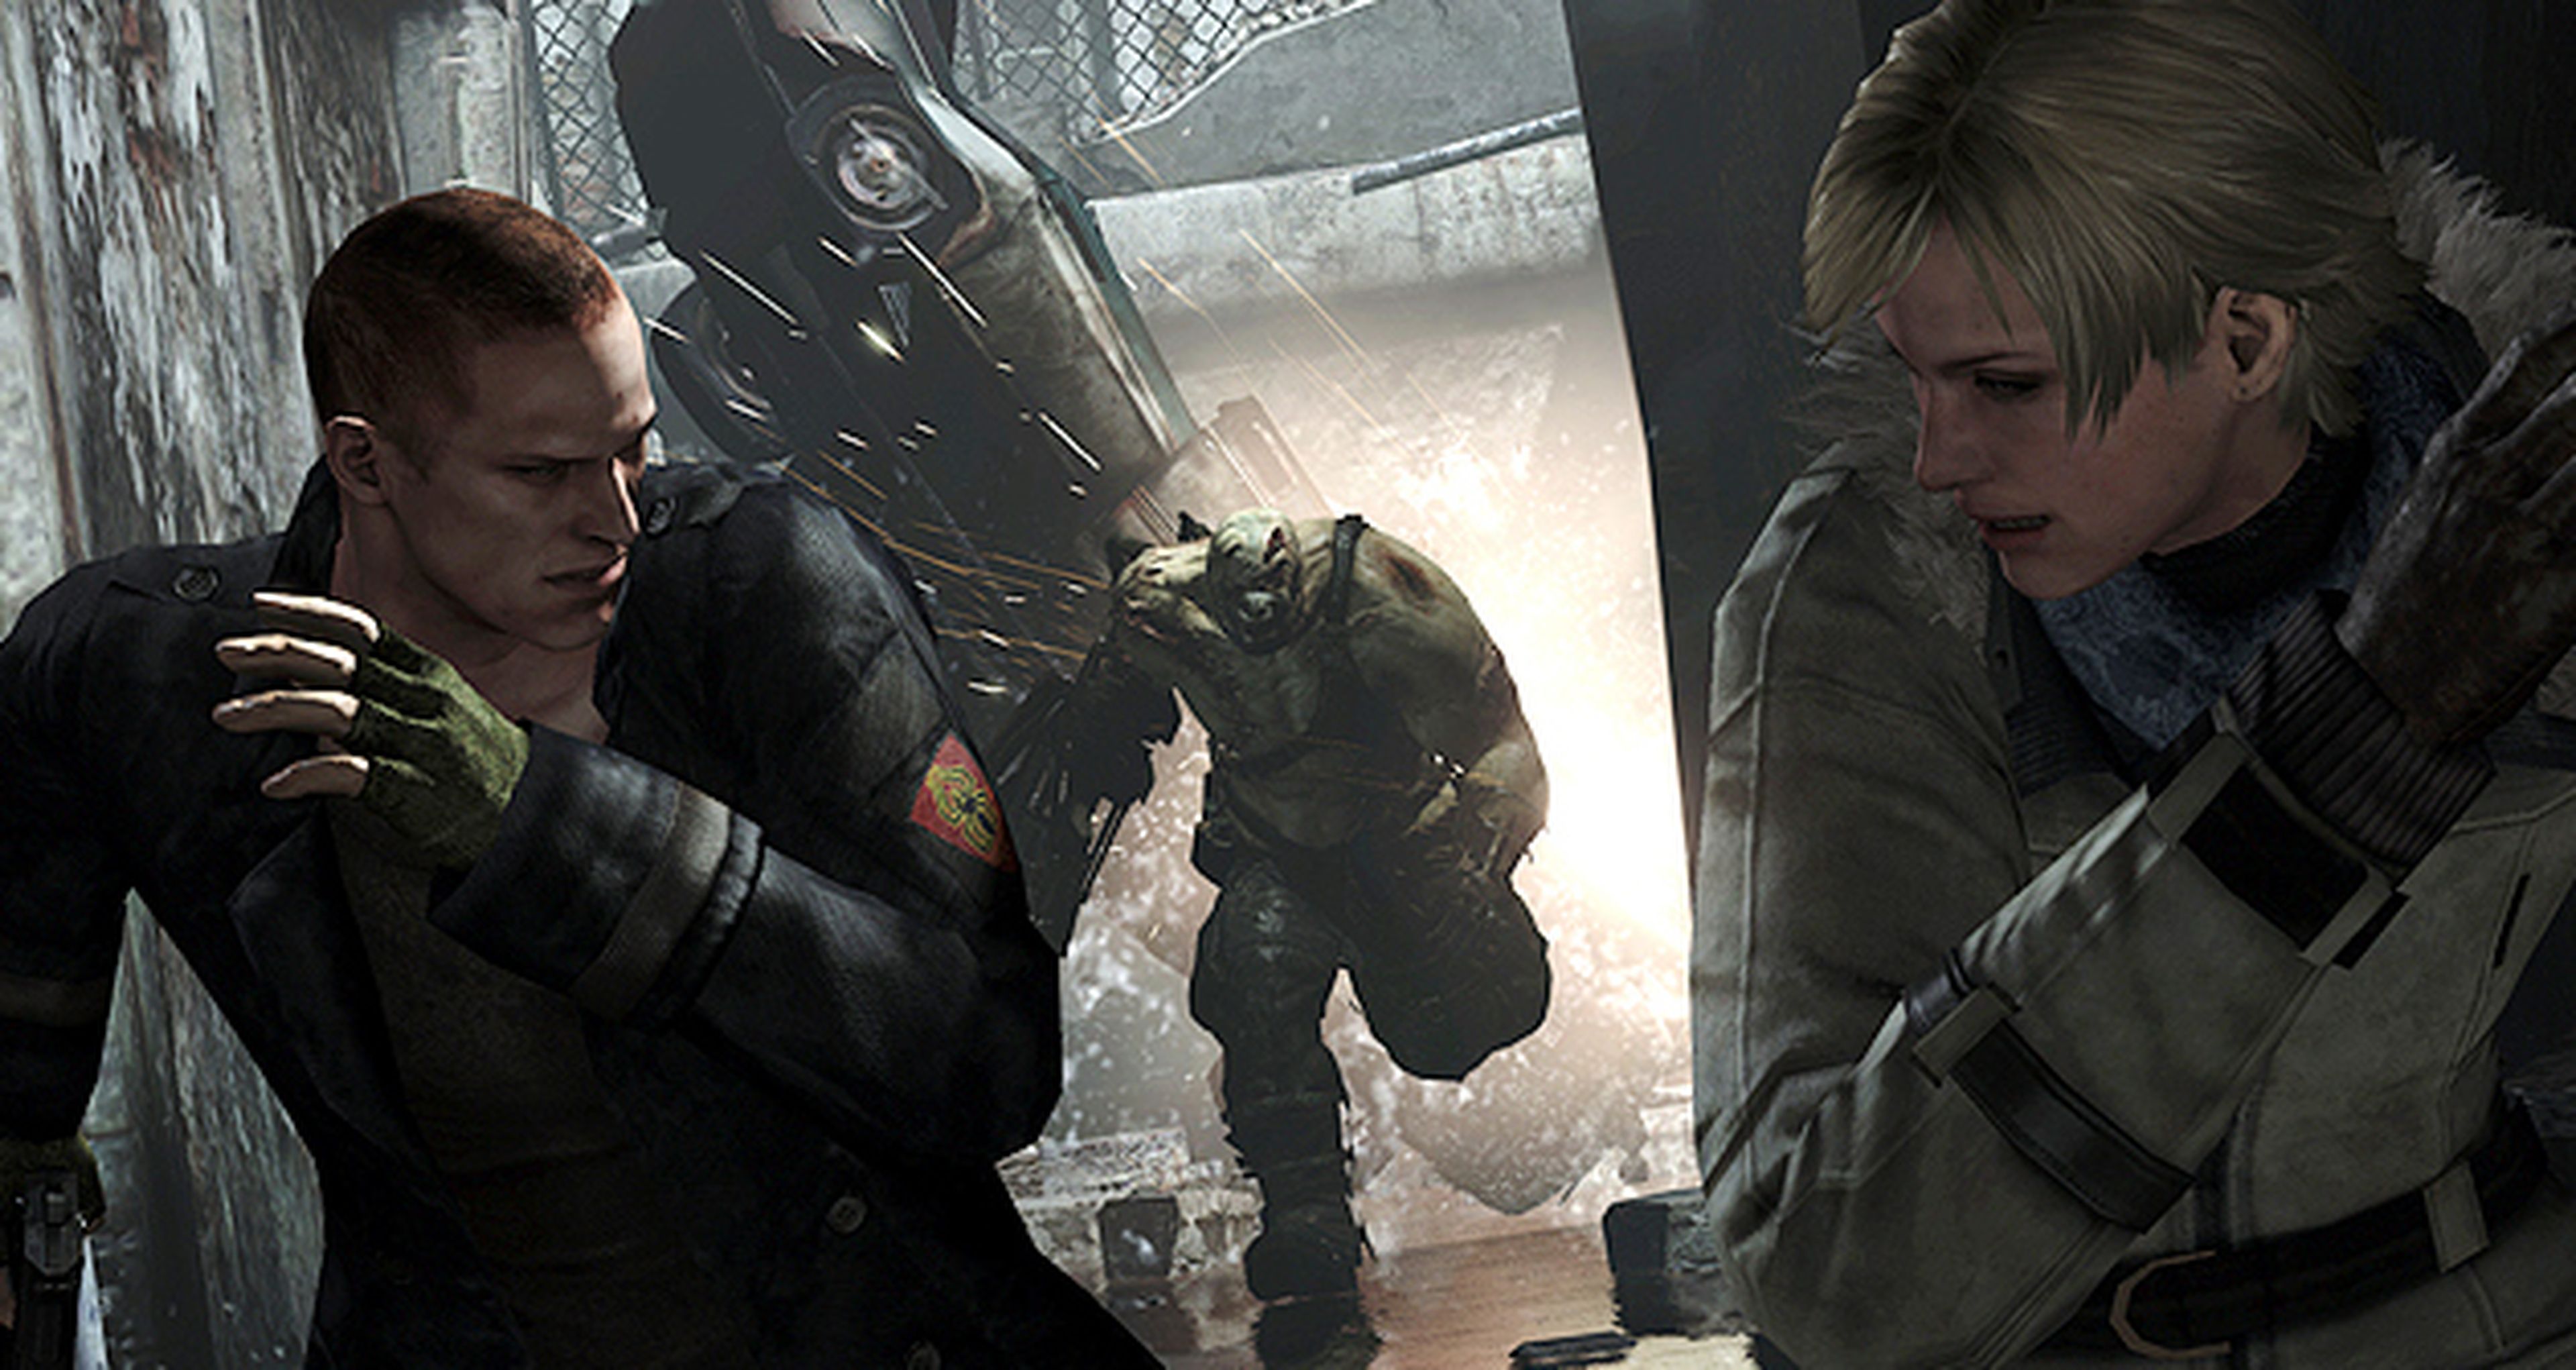 Premios por precomprar Resident Evil 6 en Steam